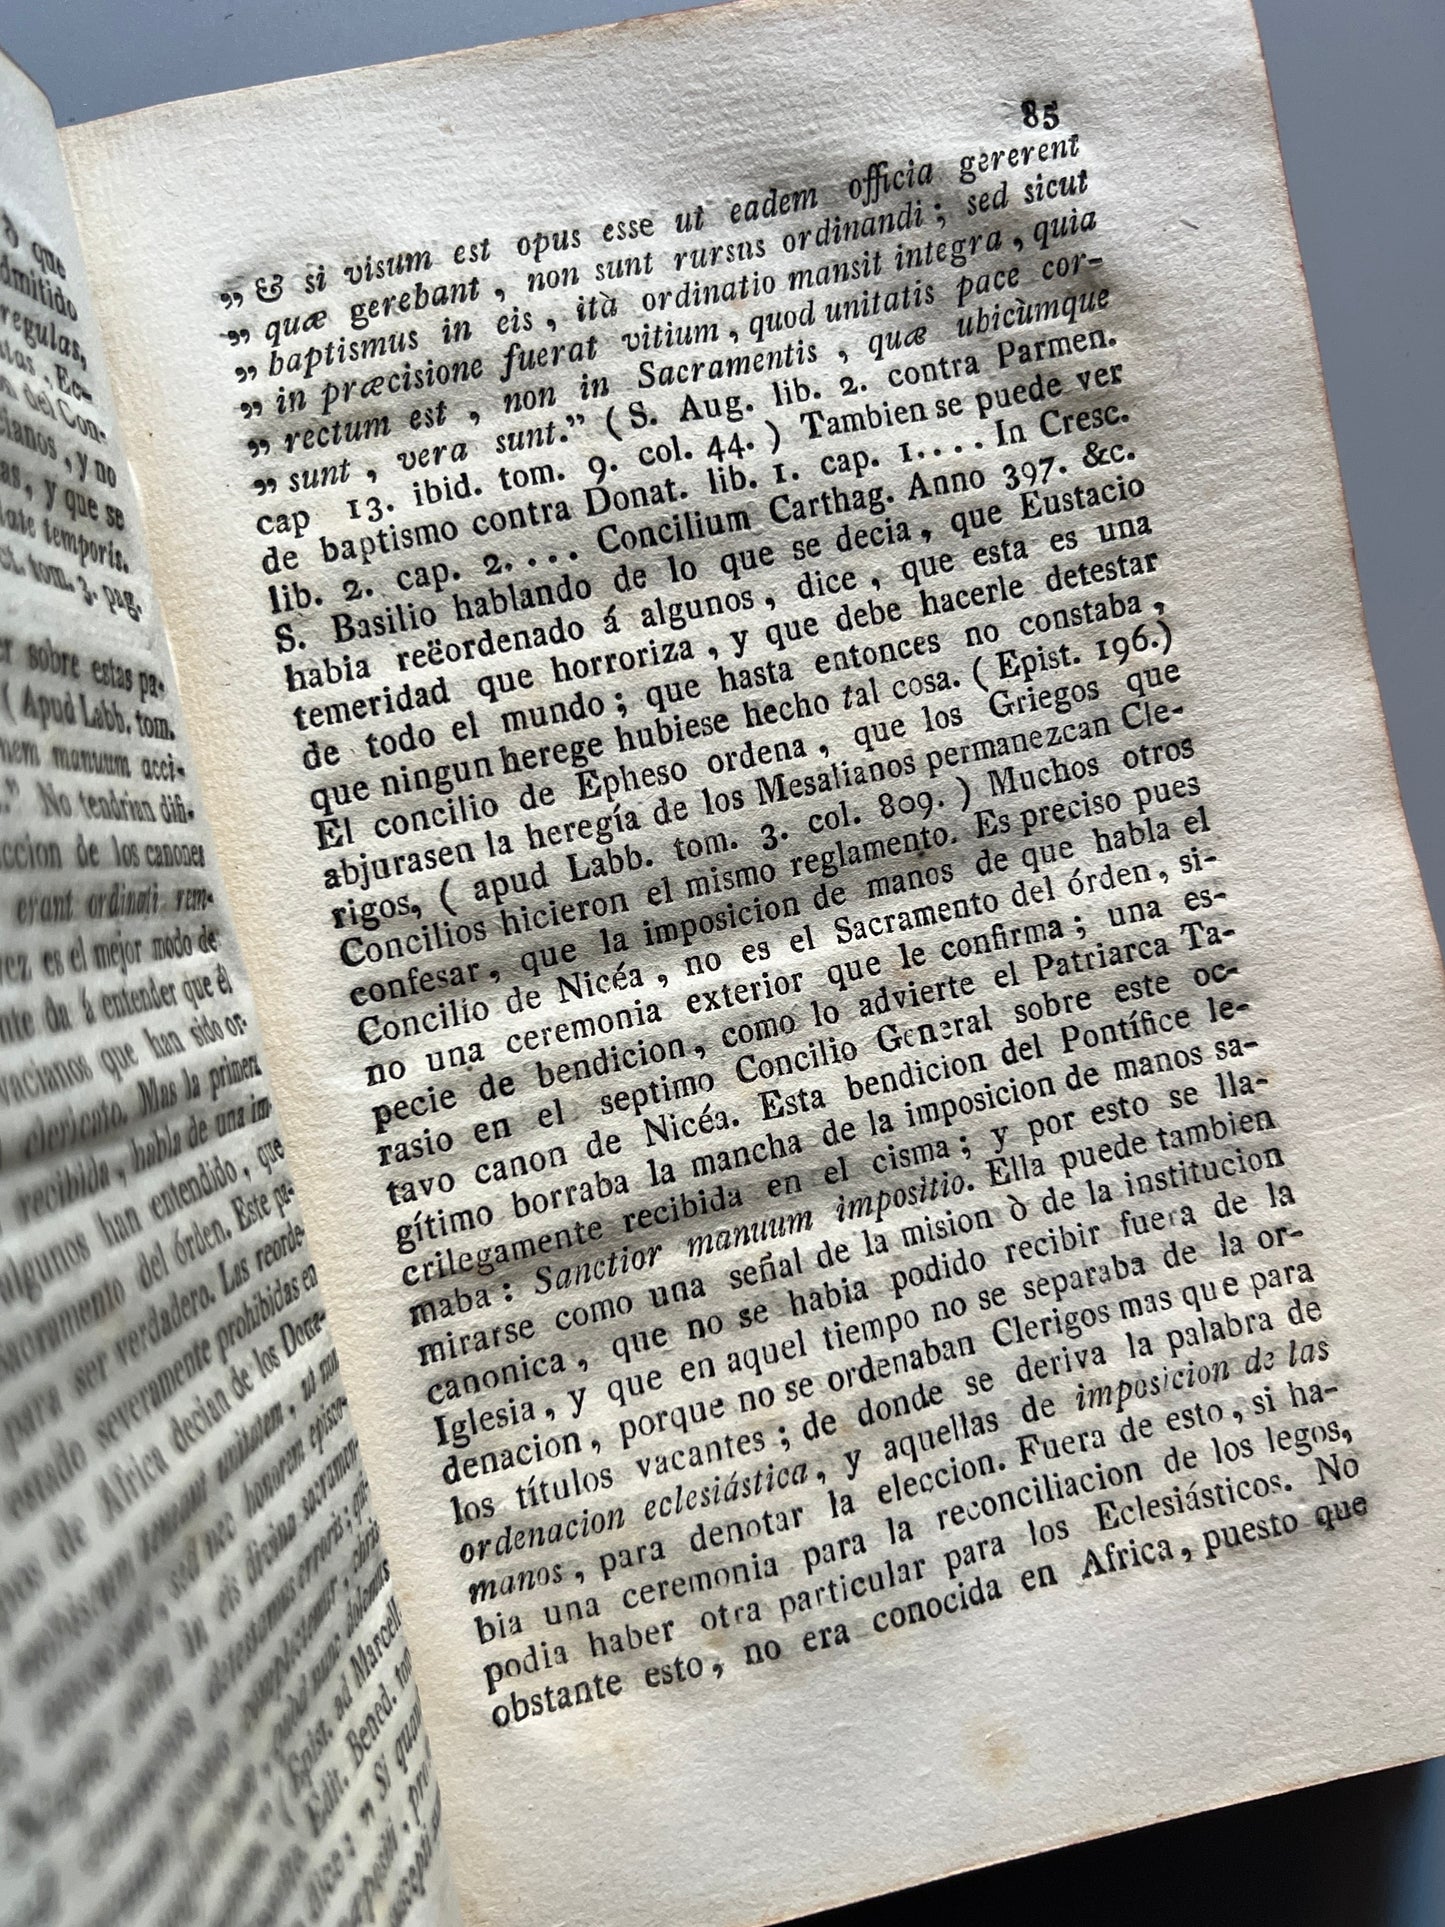 Manual de misioneros, Juan Natividad Costa - Palma en la Imprenta de Brusi, 1813